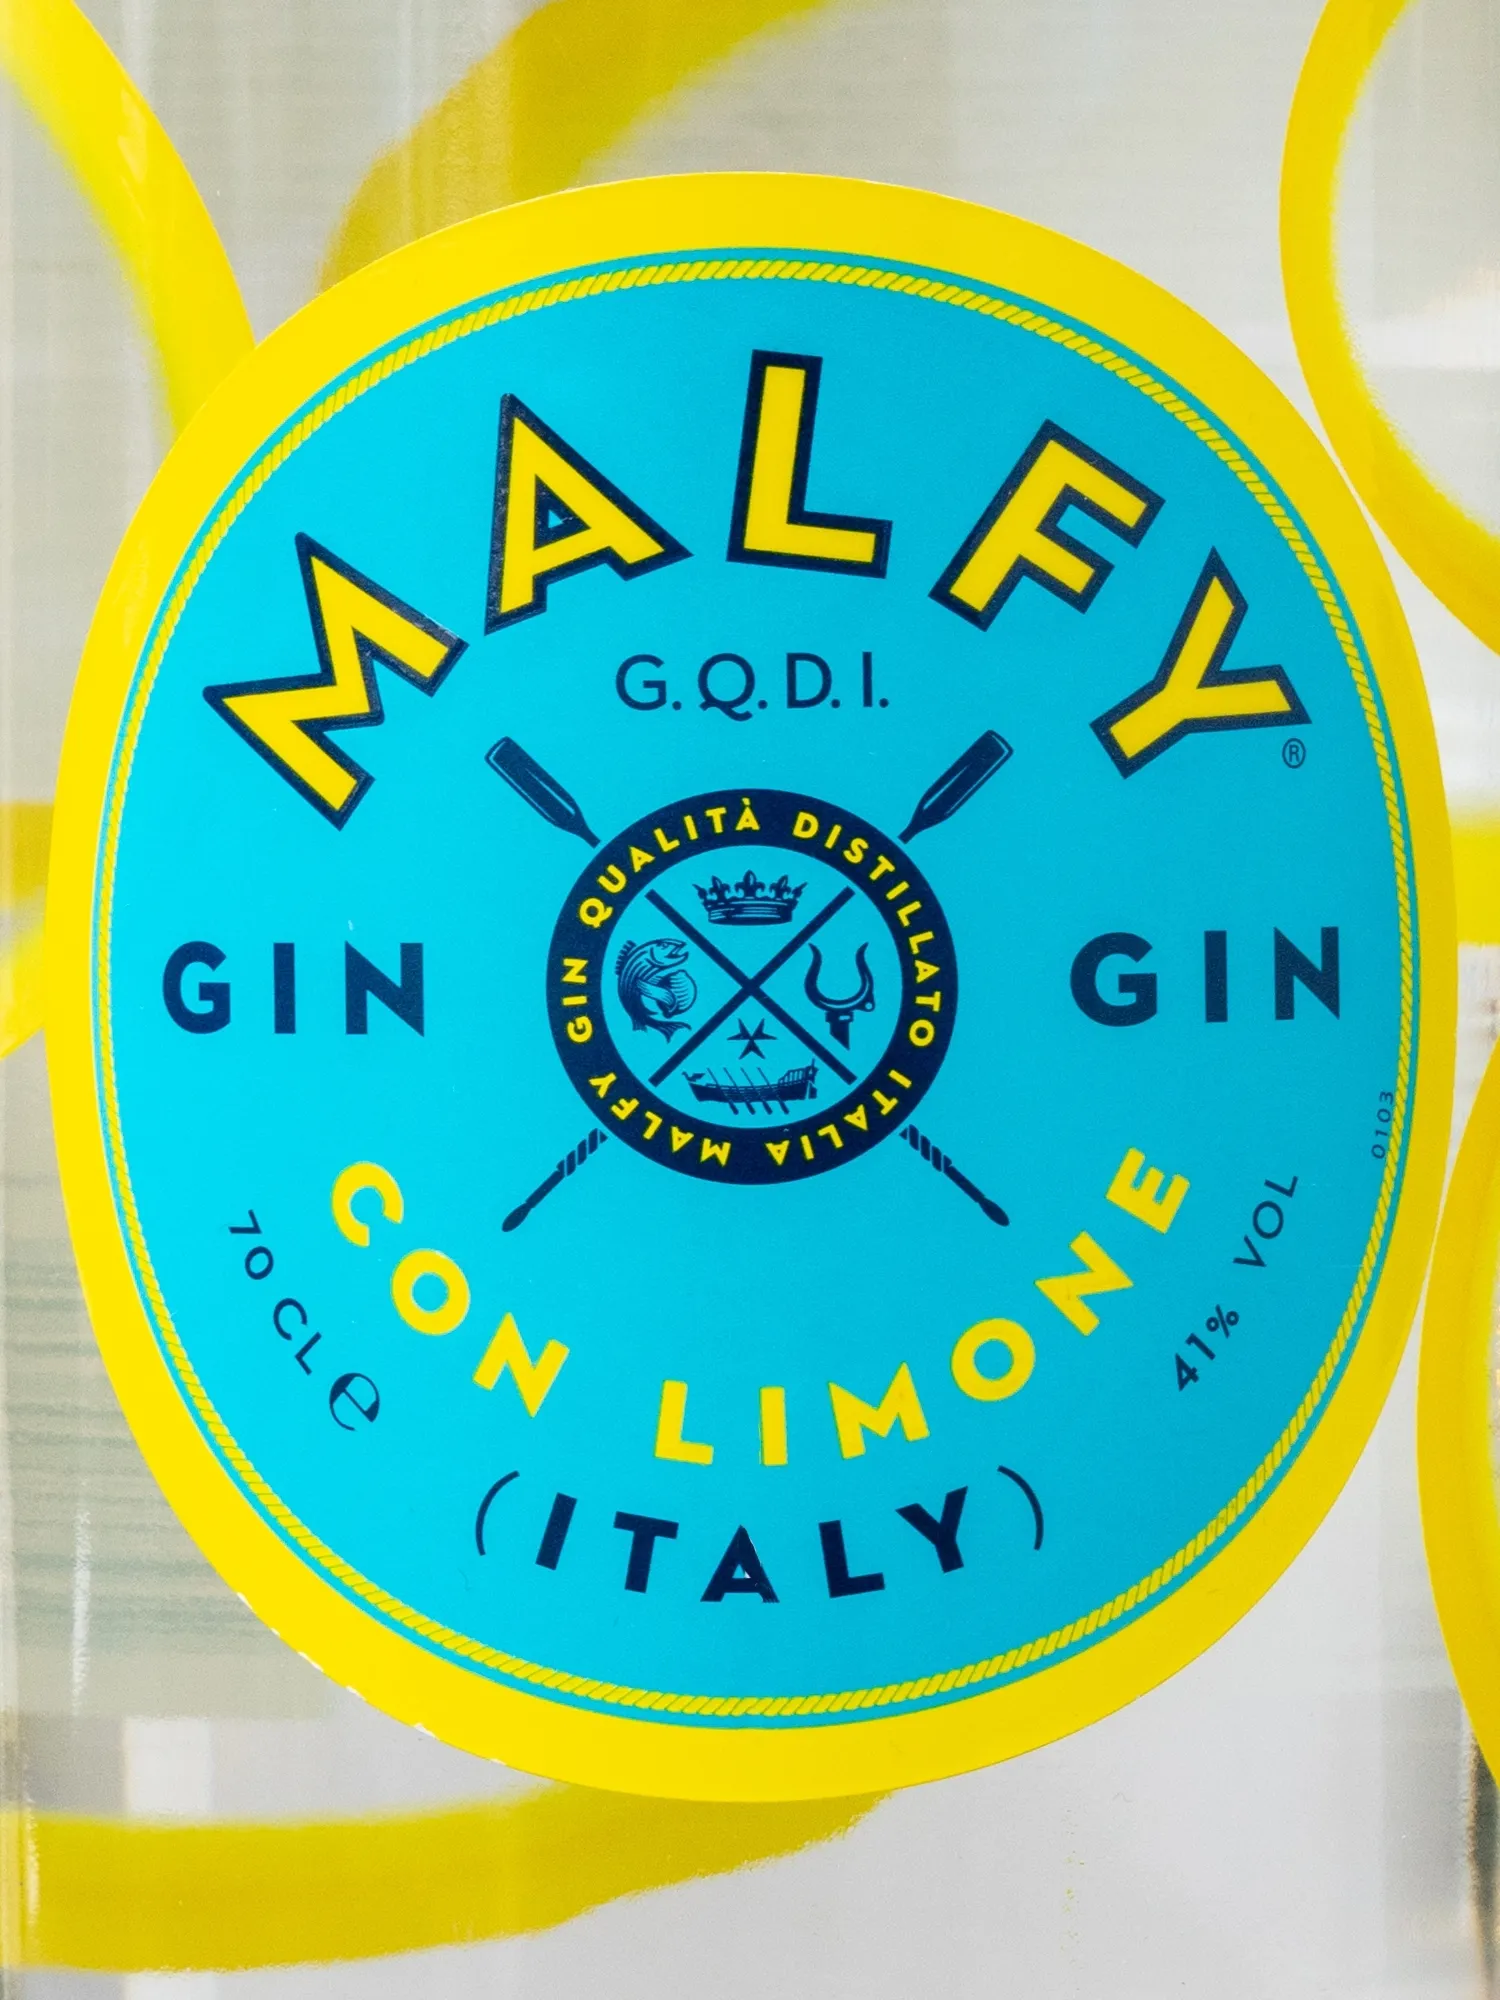 Джин Malfy con limone Gin / Малфи кон Лимоне